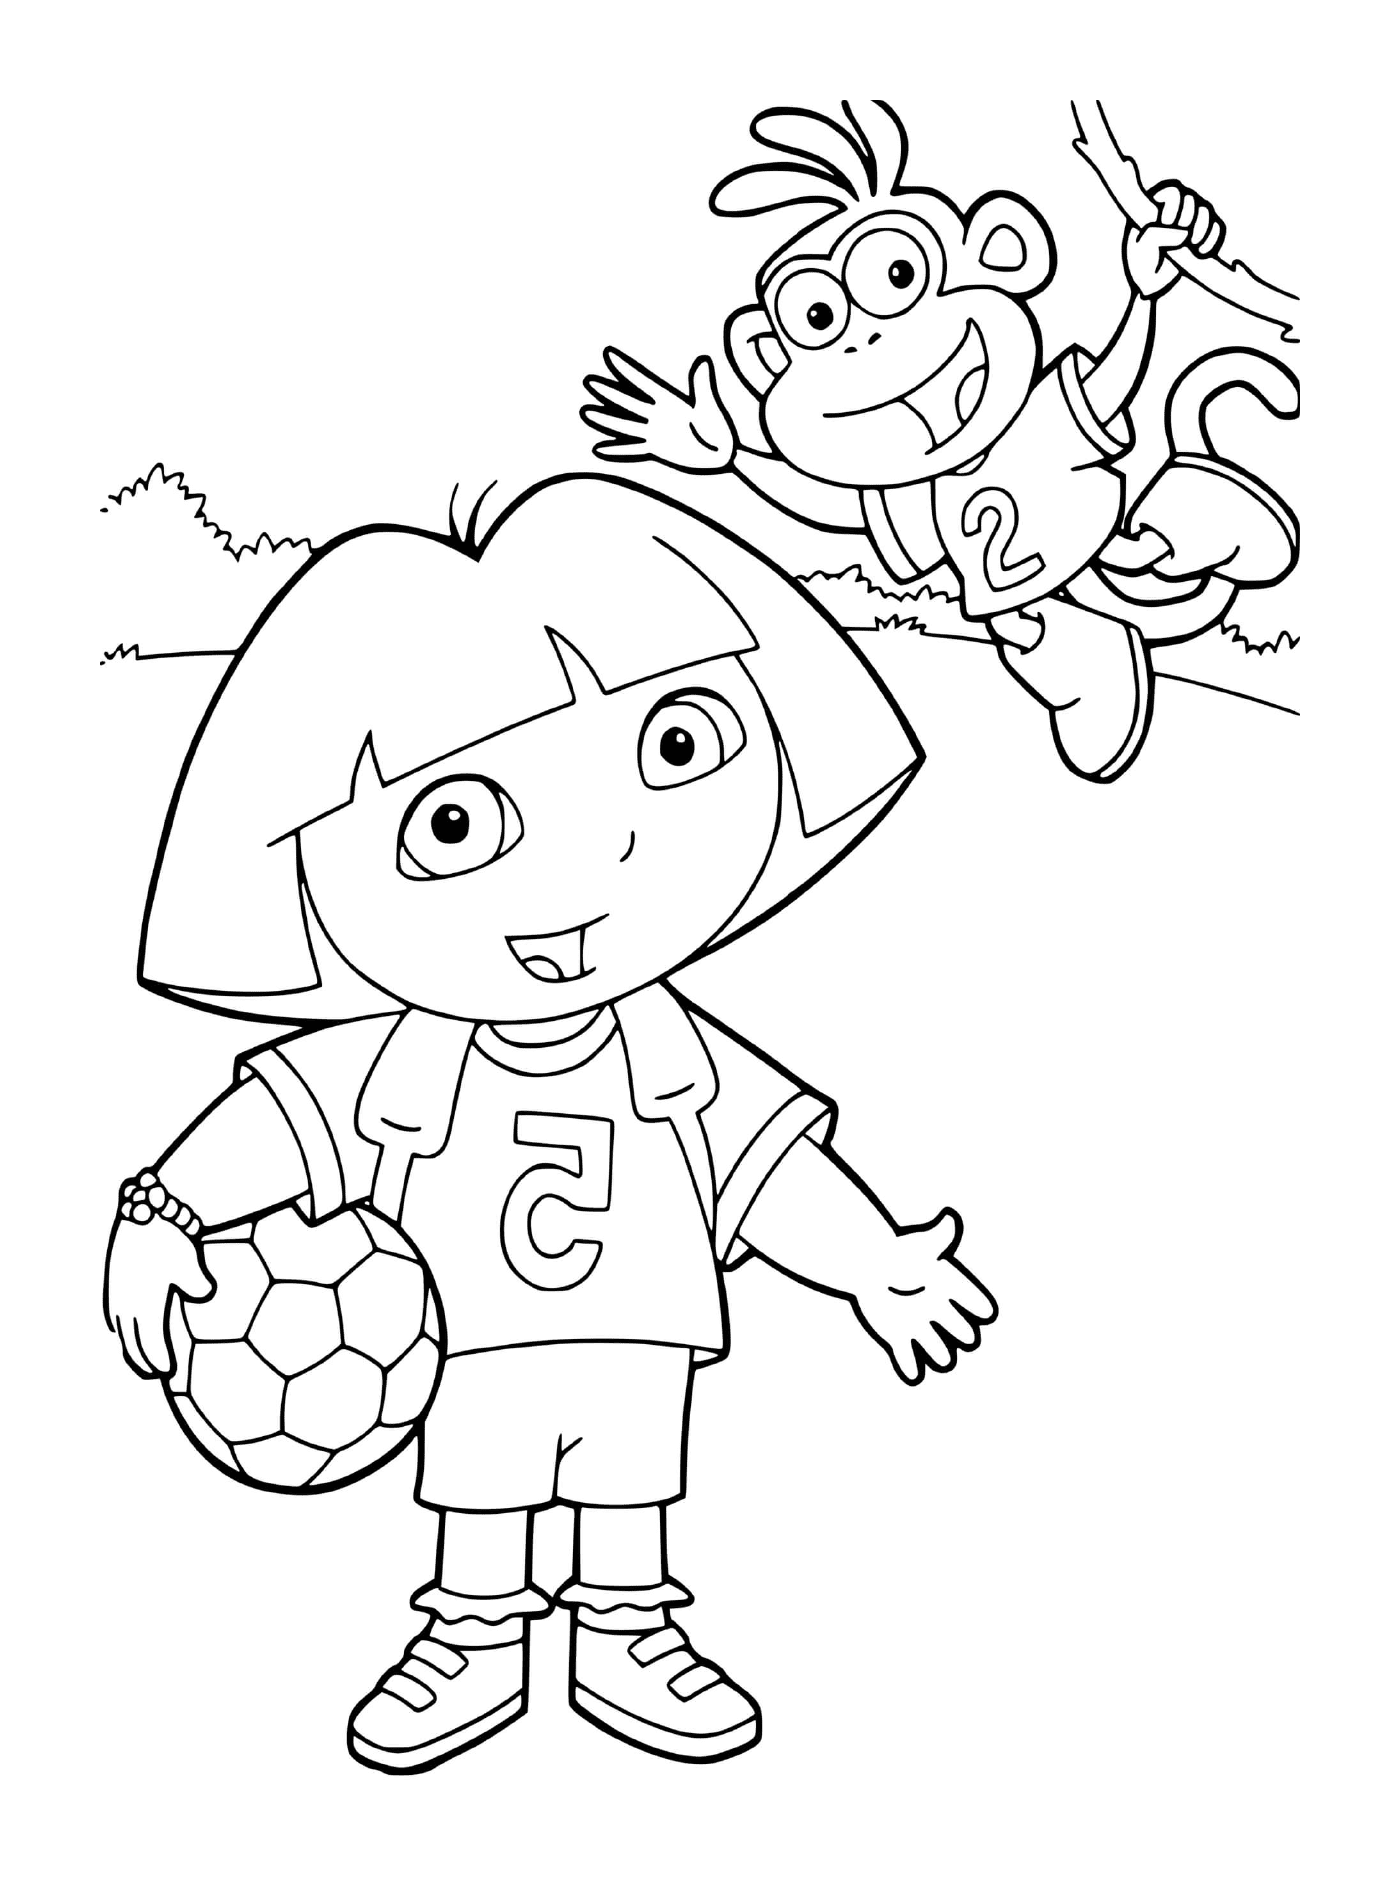  Dora juega al fútbol con Babouche en su equipo 